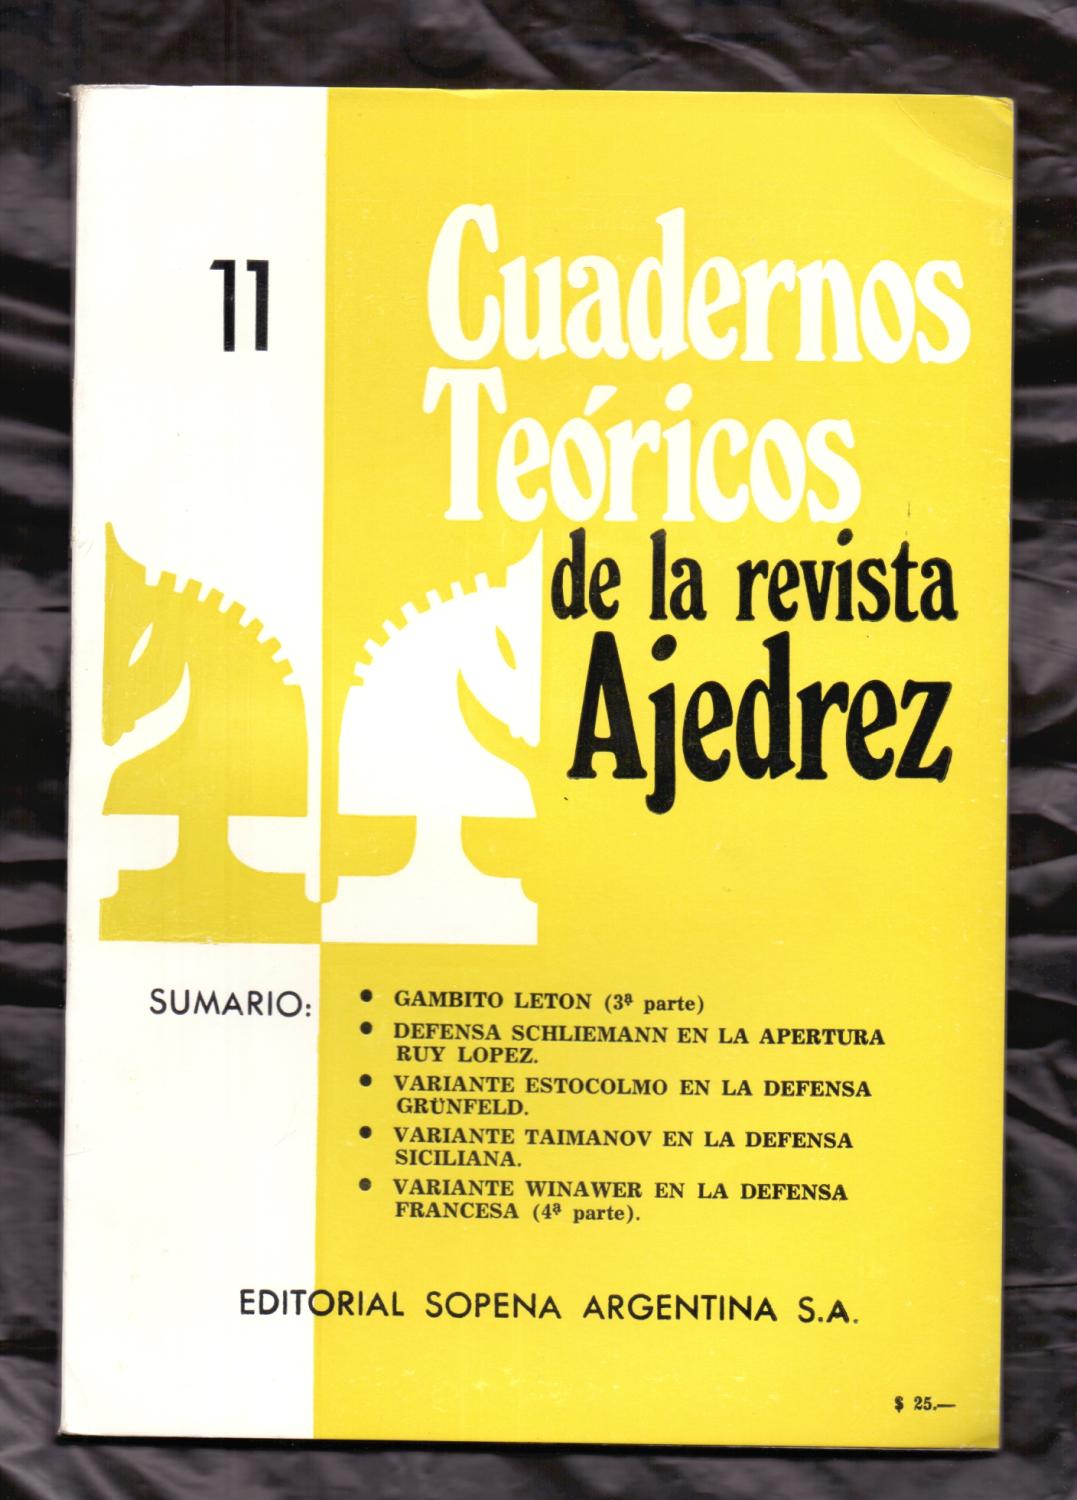 DEFENSA SCHLIEMANN EN LA APERTURA RUY LOPEZ - VARIANTE ESTOCOLMO EN LA  DEFENSA GRUNFELD - VARIANTE TAIMONOV EN LA DEFENSA SICILIANA (AJEDREZ) by  Cuadernos Teoricos de la Revista Ajedrez, 11